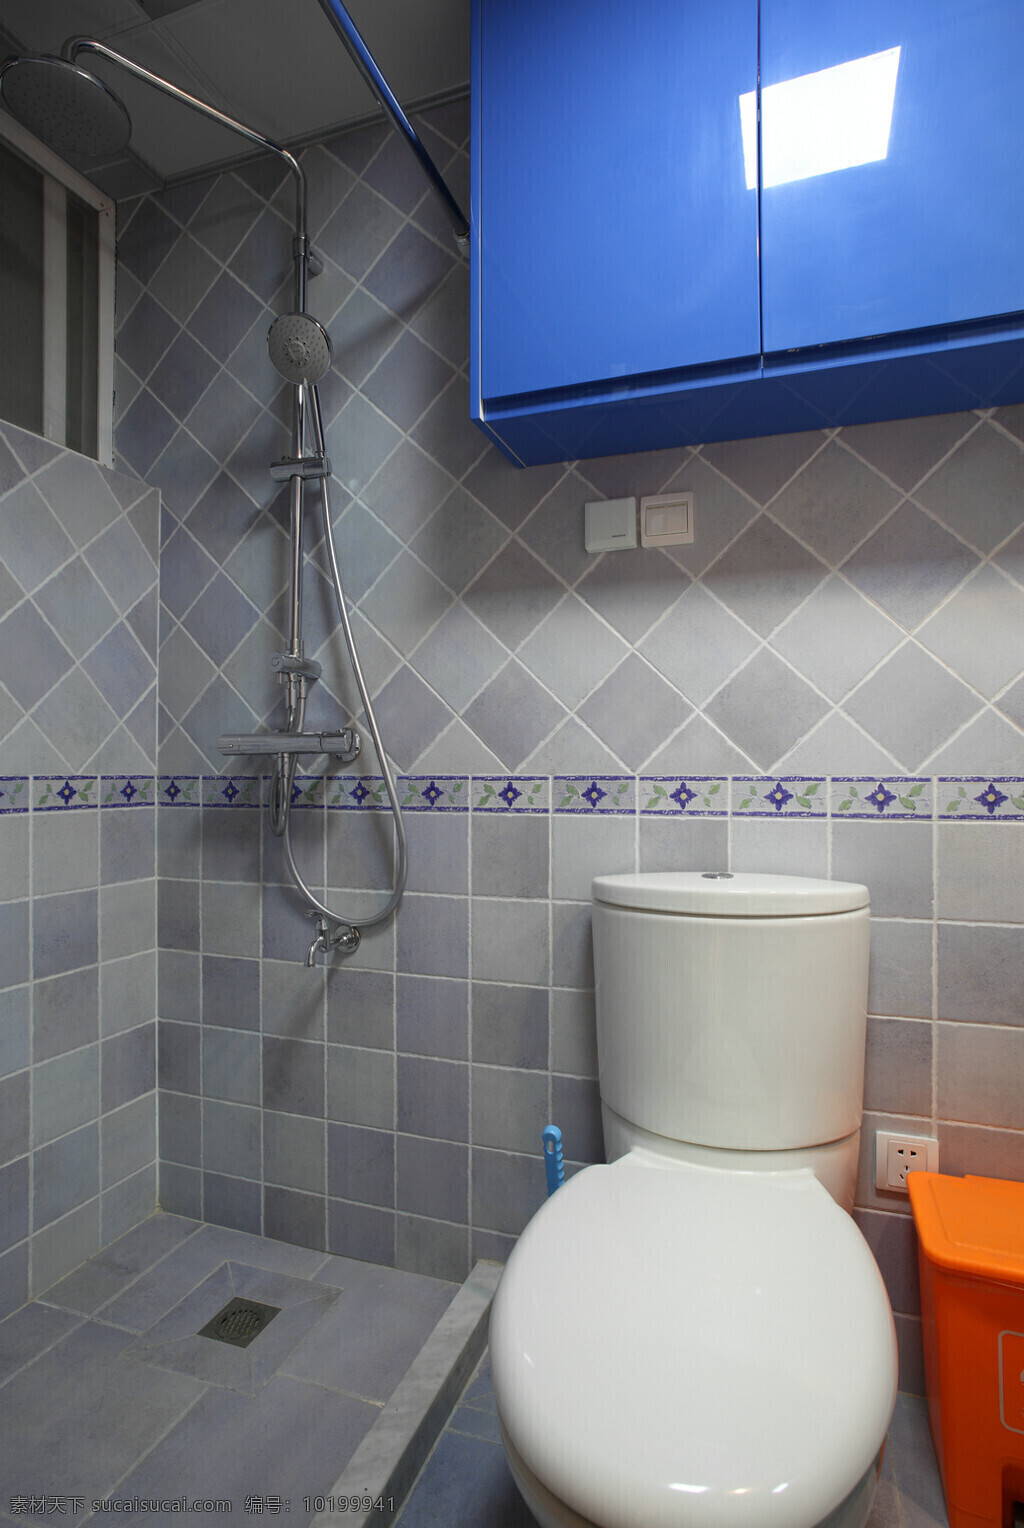 清新 简约 浴室 灰白 格子 背景 墙 室内装修 效果图 浴室装修 灰色 蓝色柜子 卫生间装修